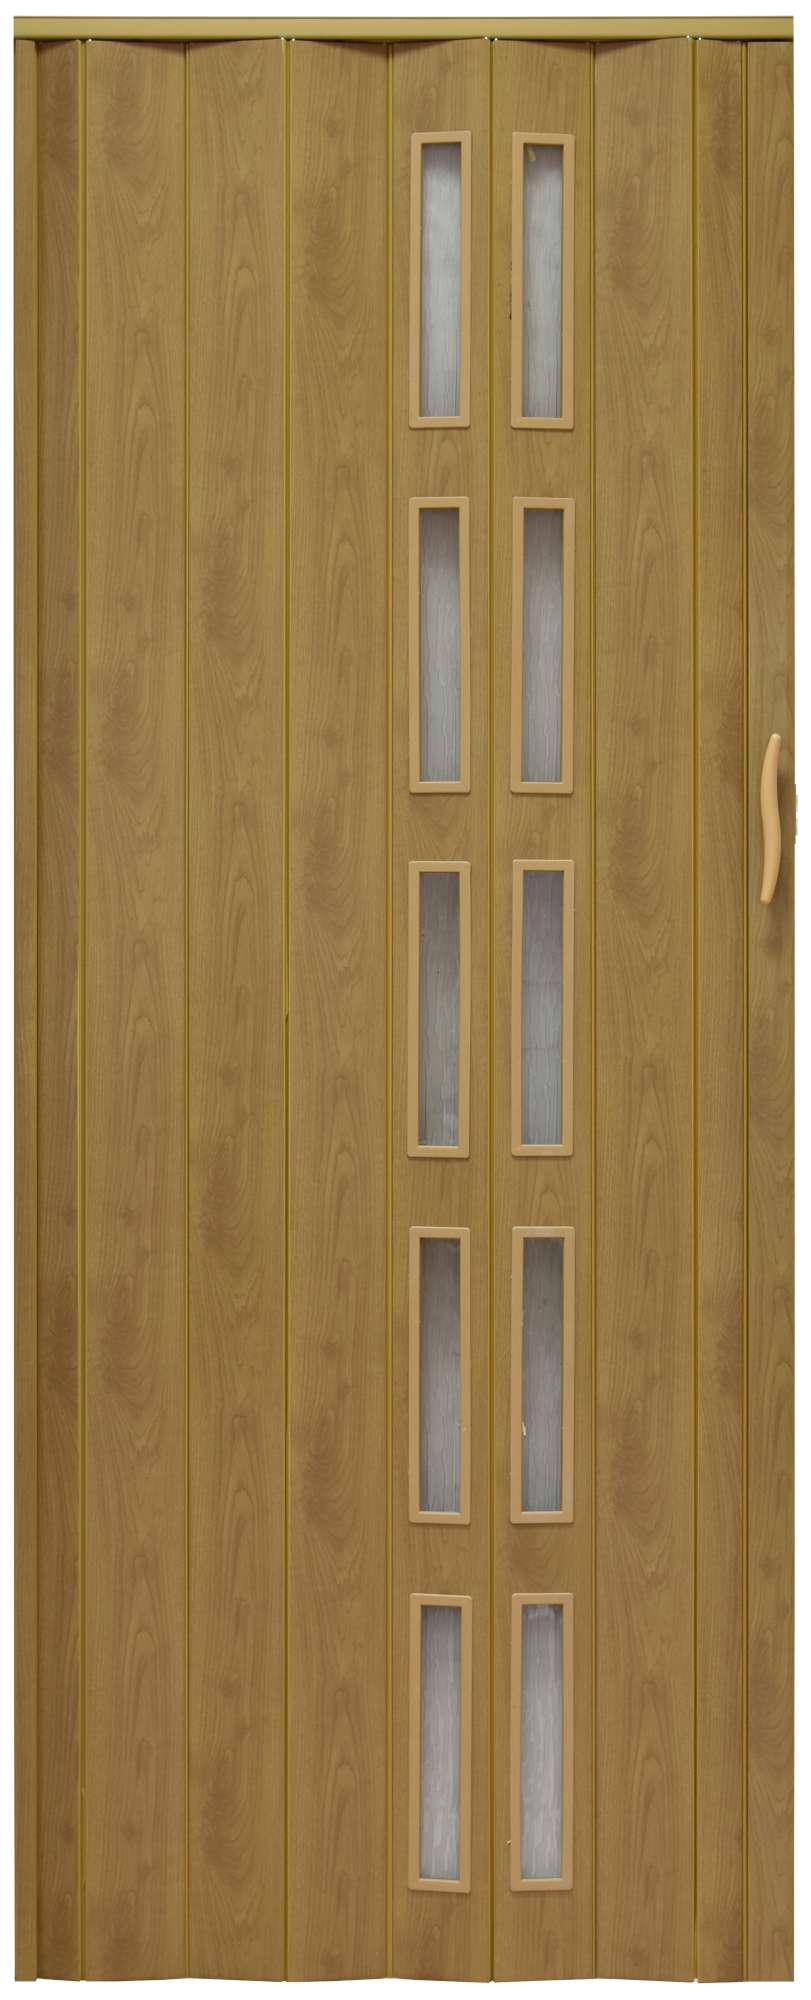 Drzwi Harmonijkowe 005S 46 G Jasny Dąb Mat G 100 cm